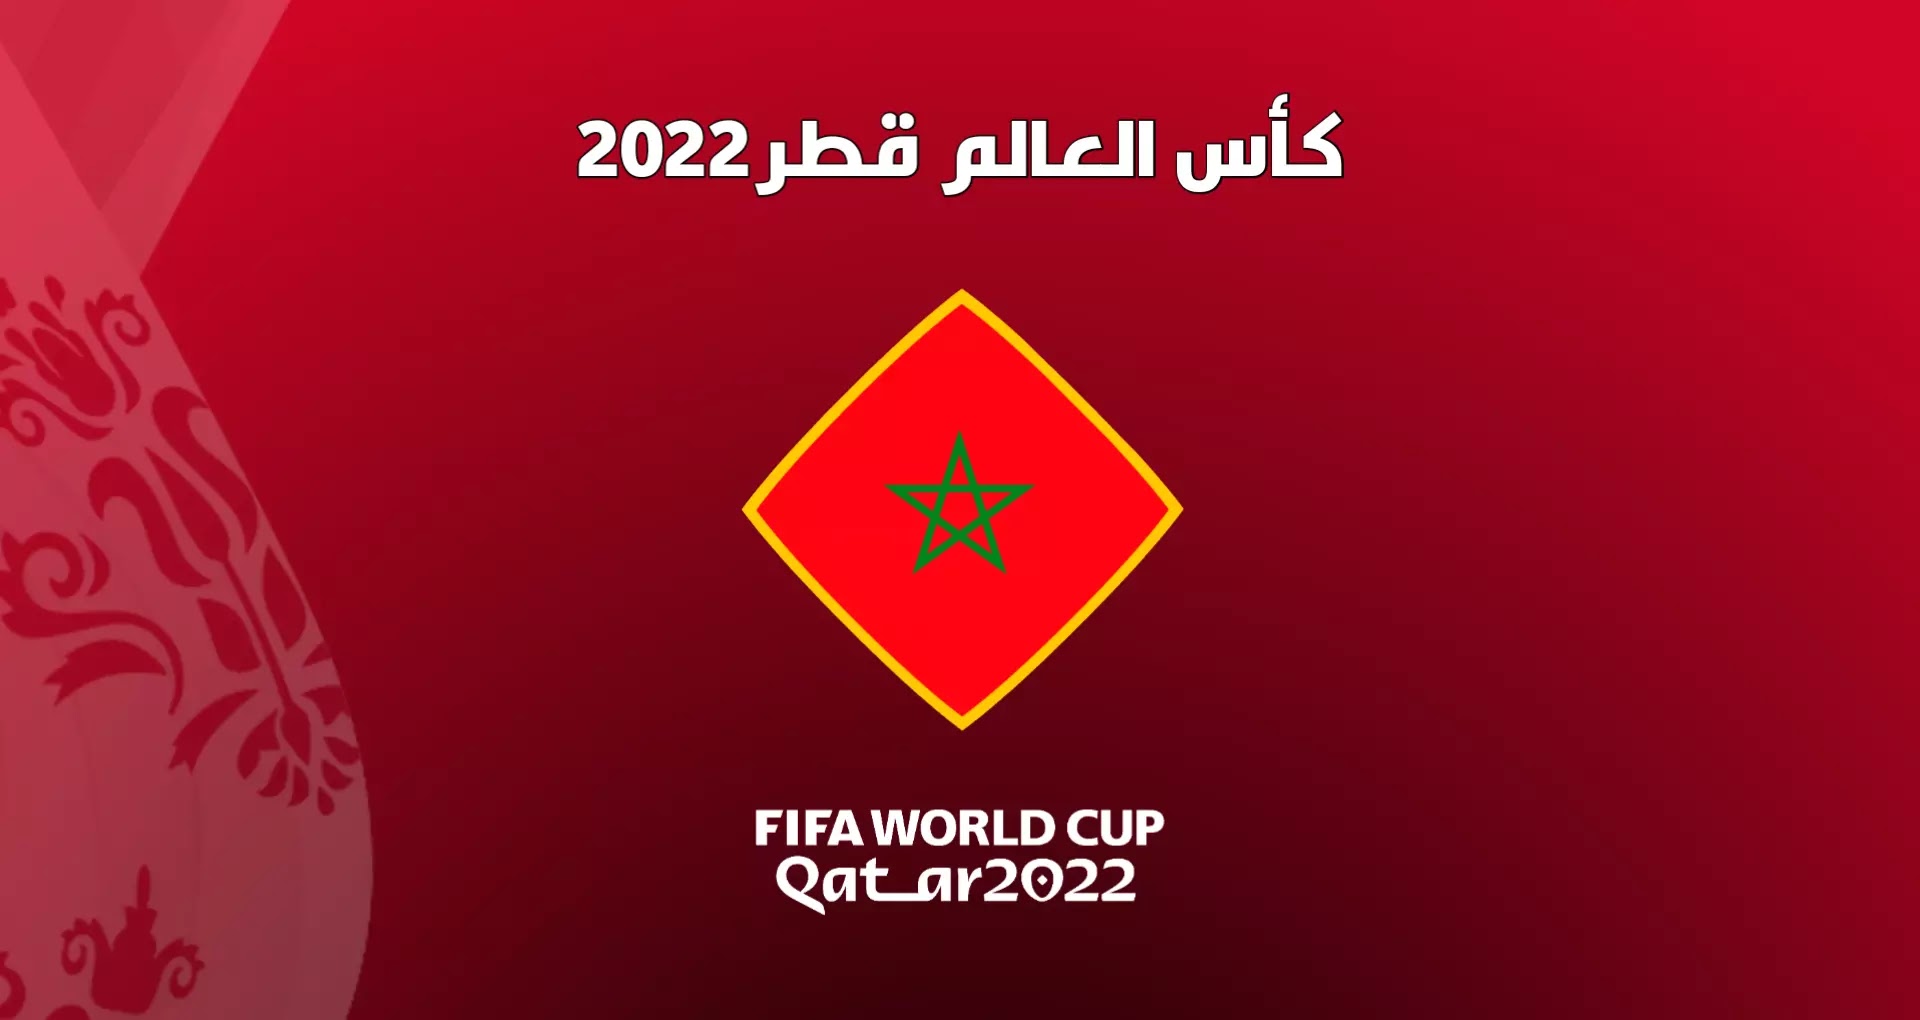 موعد مباراة المنتخب المغربي في ربع نهائي كأس العالم 2022